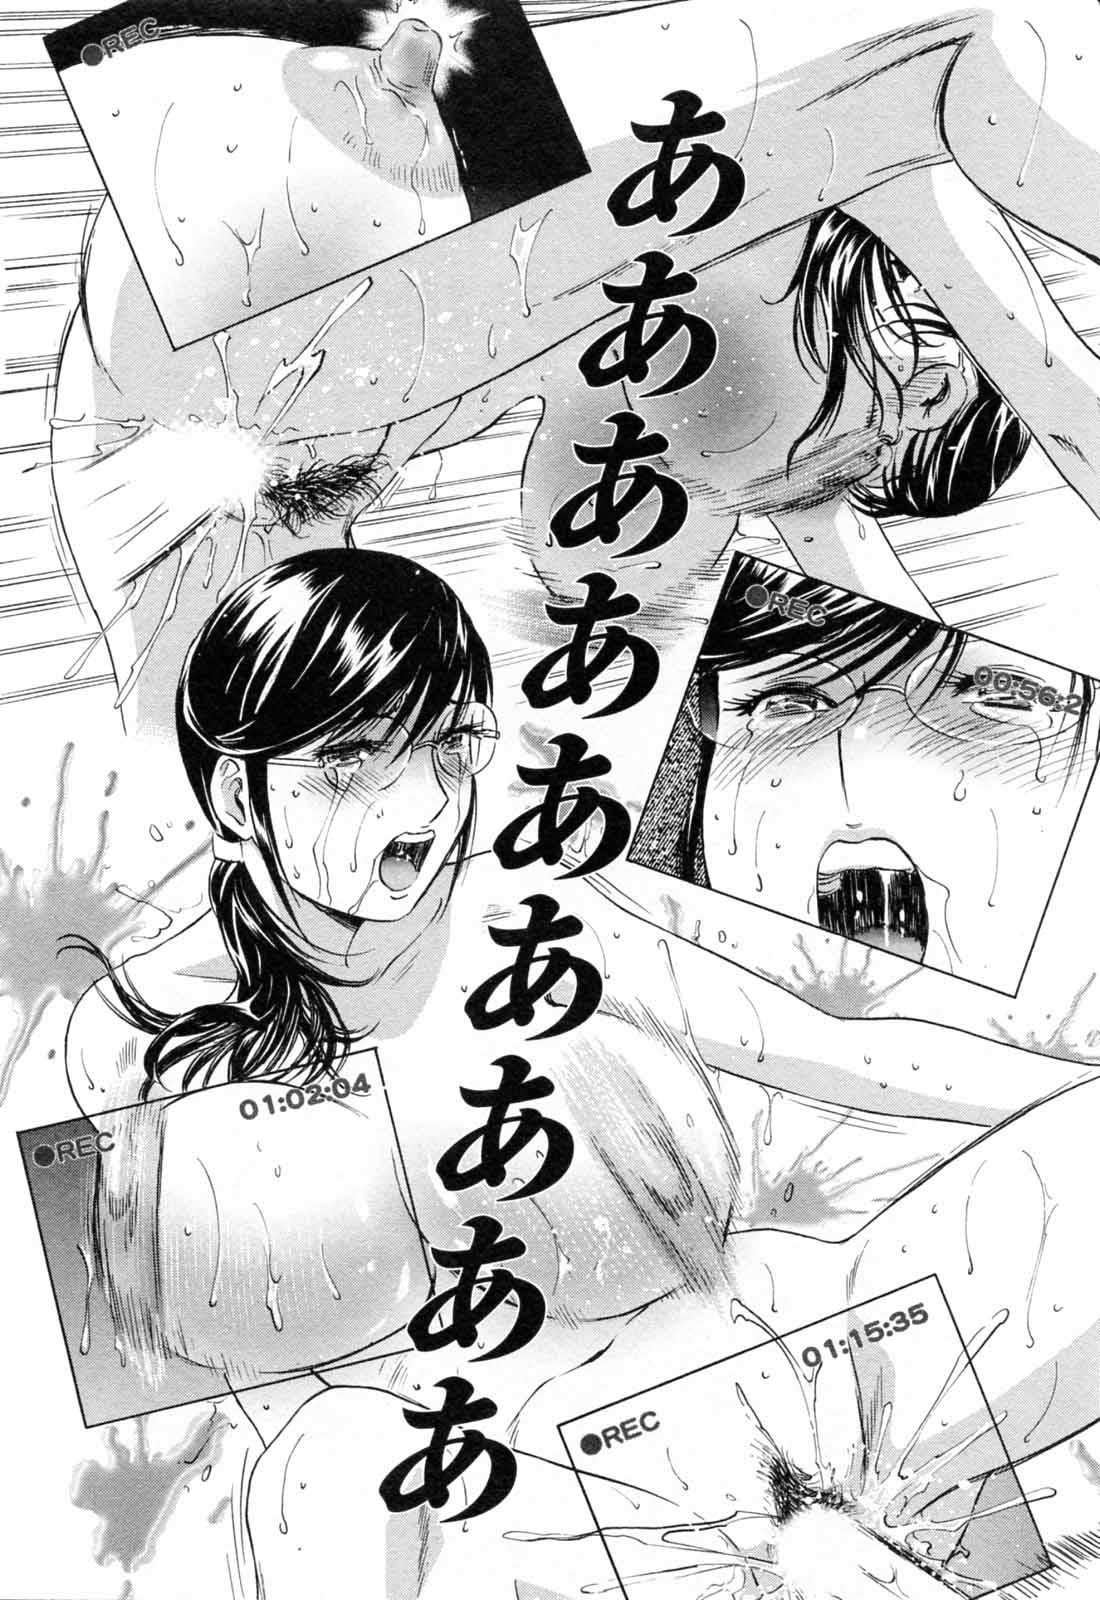 [Hidemaru] Mo-Retsu! Boin Sensei (Boing Boing Teacher) Vol.5 111